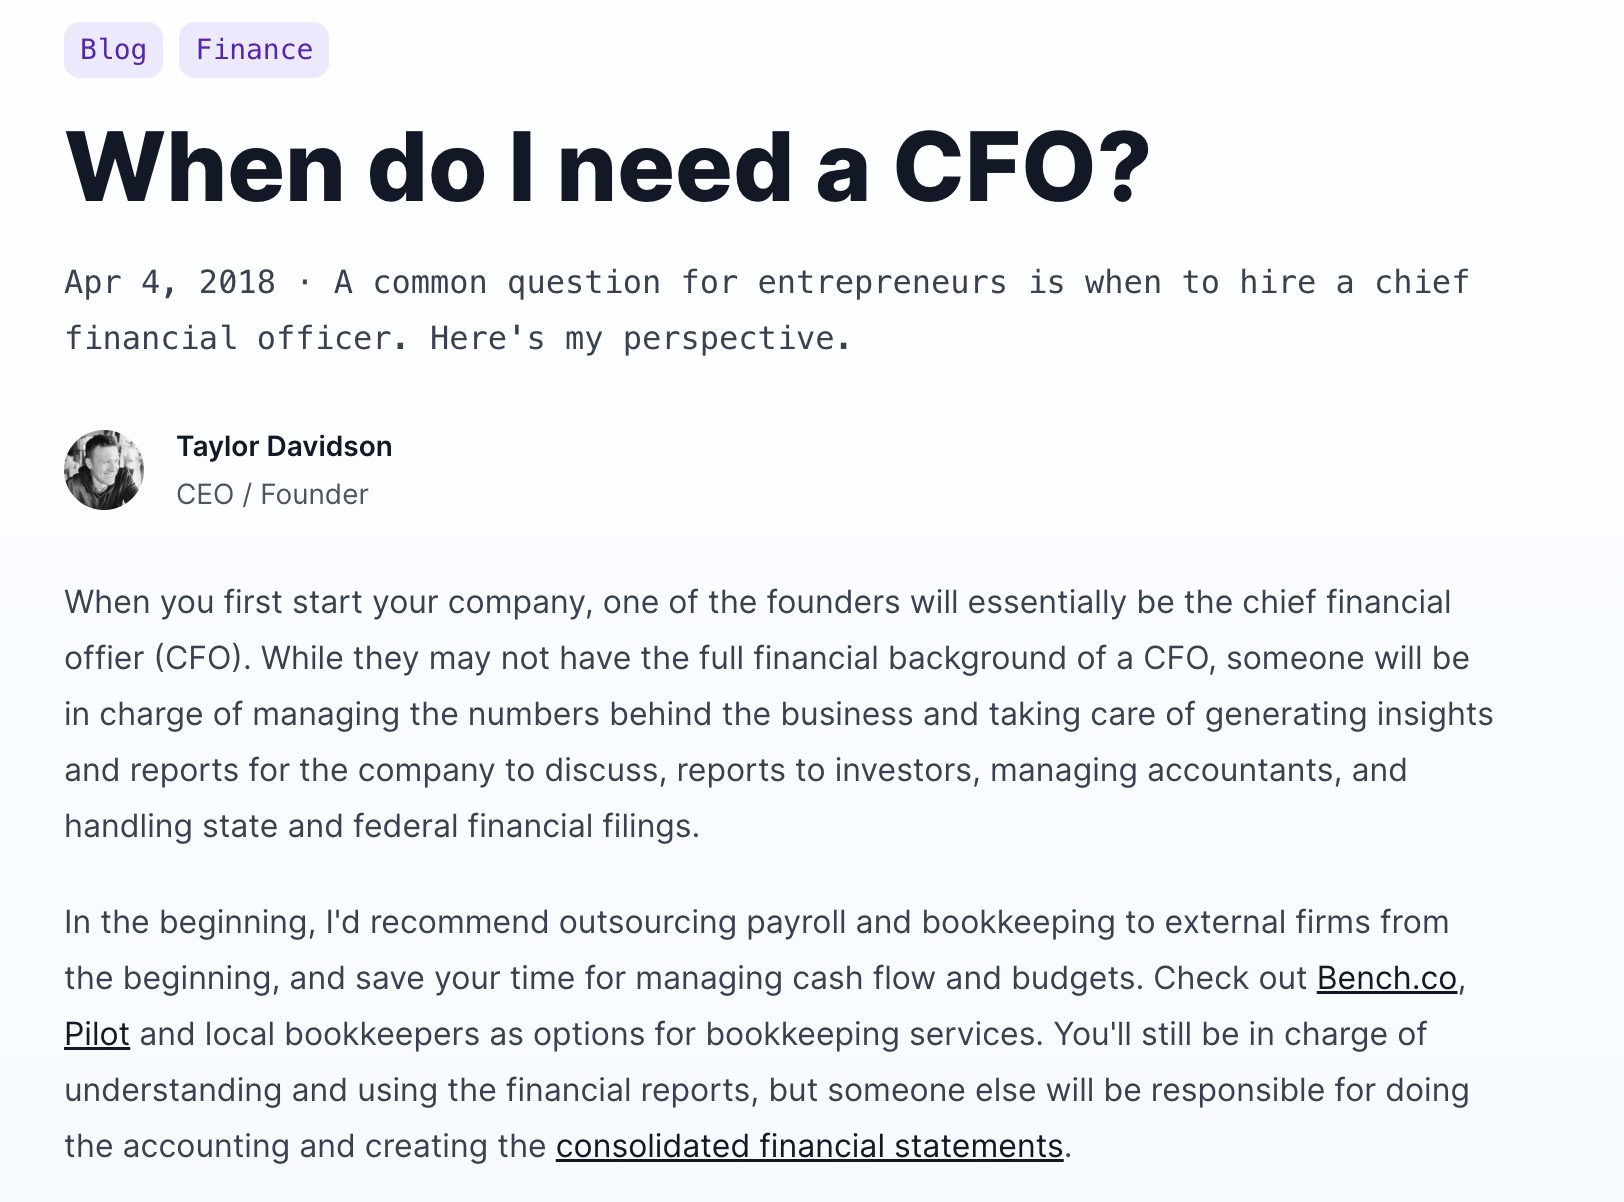 When do I need a CFO?